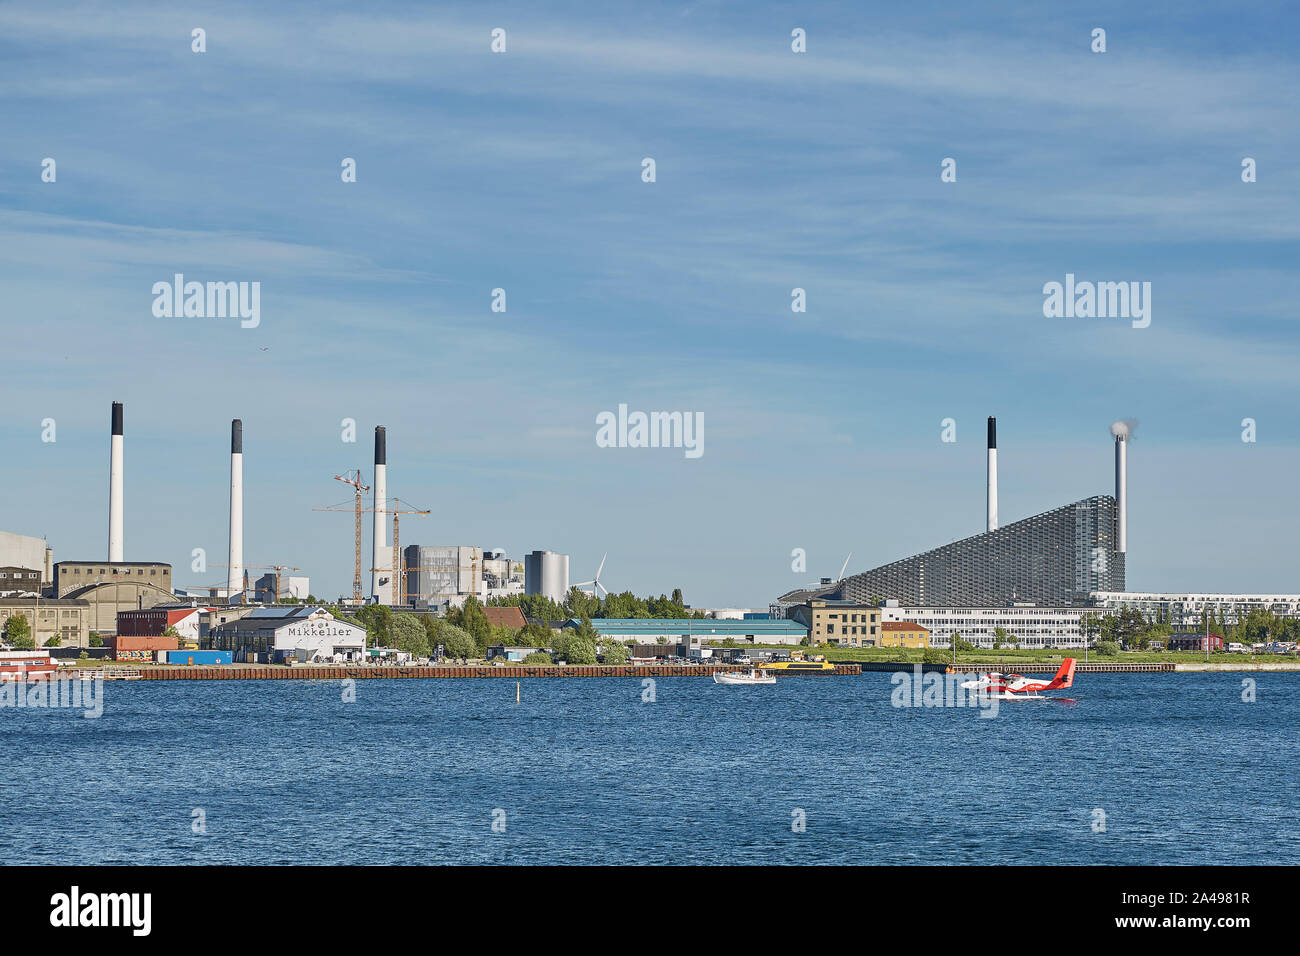 Kopenhagen, Dänemark - 25. MAI 2017: Amager Bakke/Copenhill Waste-to-Energy Power Plant in Kopenhagen. Auf der Dachterrasse Skigebiet geöffnet Freitag, 4. Oktober 20. Stockfoto